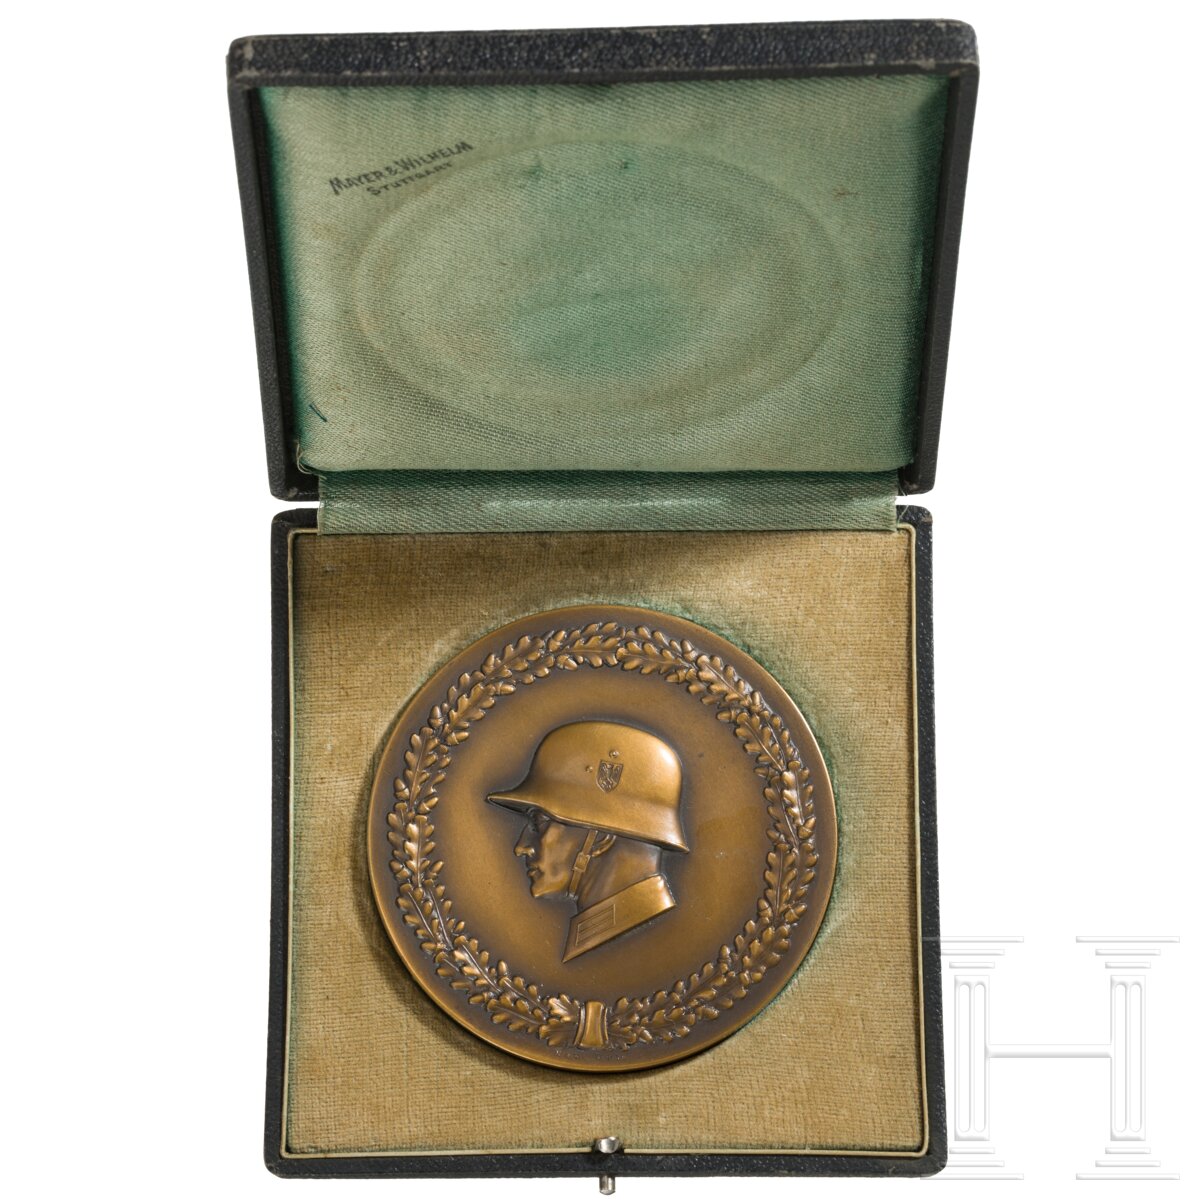 Medaille für Bestleistungen des IX. Armeekorps